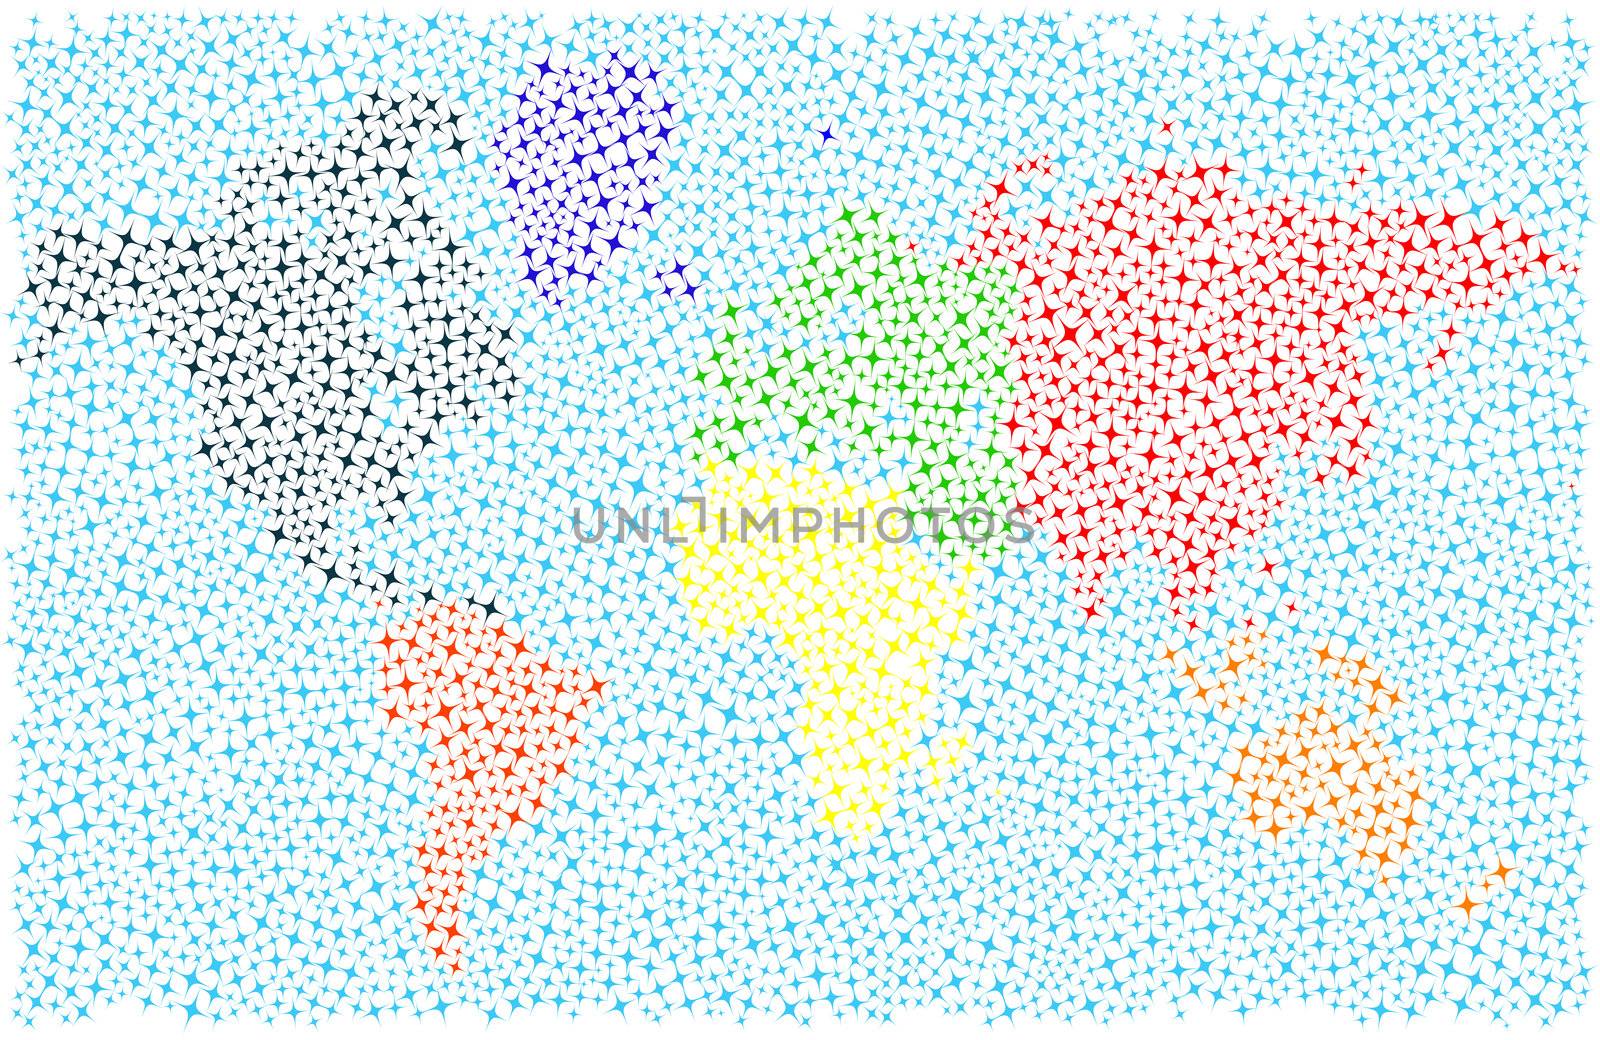 Stylized world map by Lirch